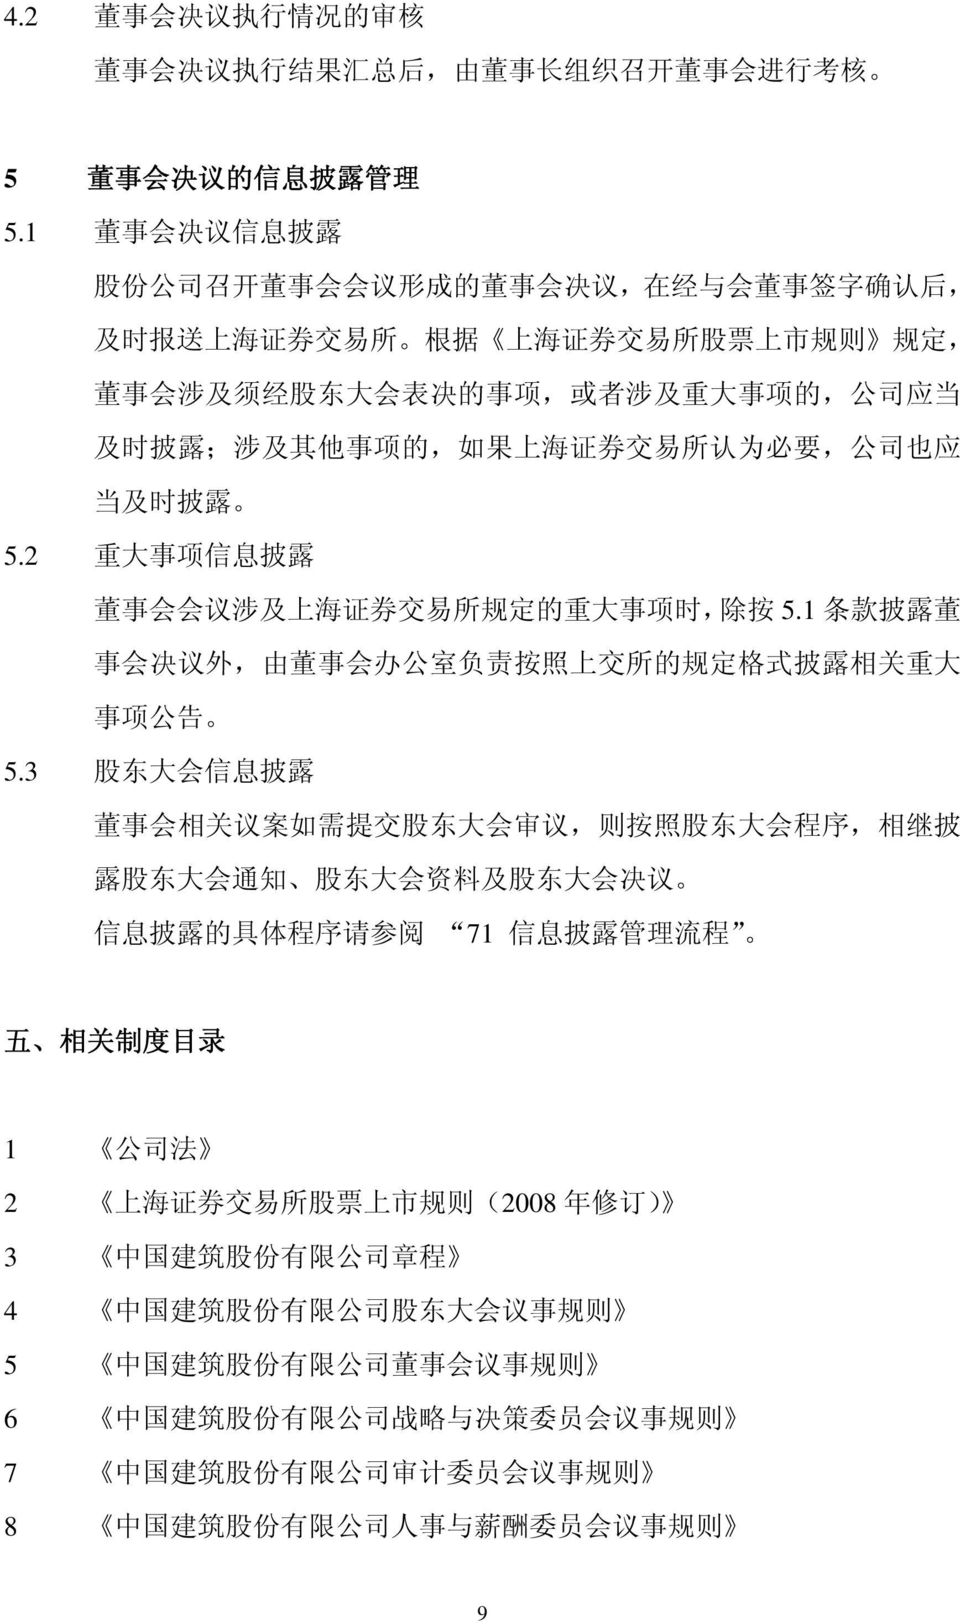 及 时 披 露 ; 涉 及 其 他 事 项 的, 如 果 上 海 证 券 交 易 所 认 为 必 要, 公 司 也 应 当 及 时 披 露 5.2 重 大 事 项 信 息 披 露 董 事 会 会 议 涉 及 上 海 证 券 交 易 所 规 定 的 重 大 事 项 时, 除 按 5.